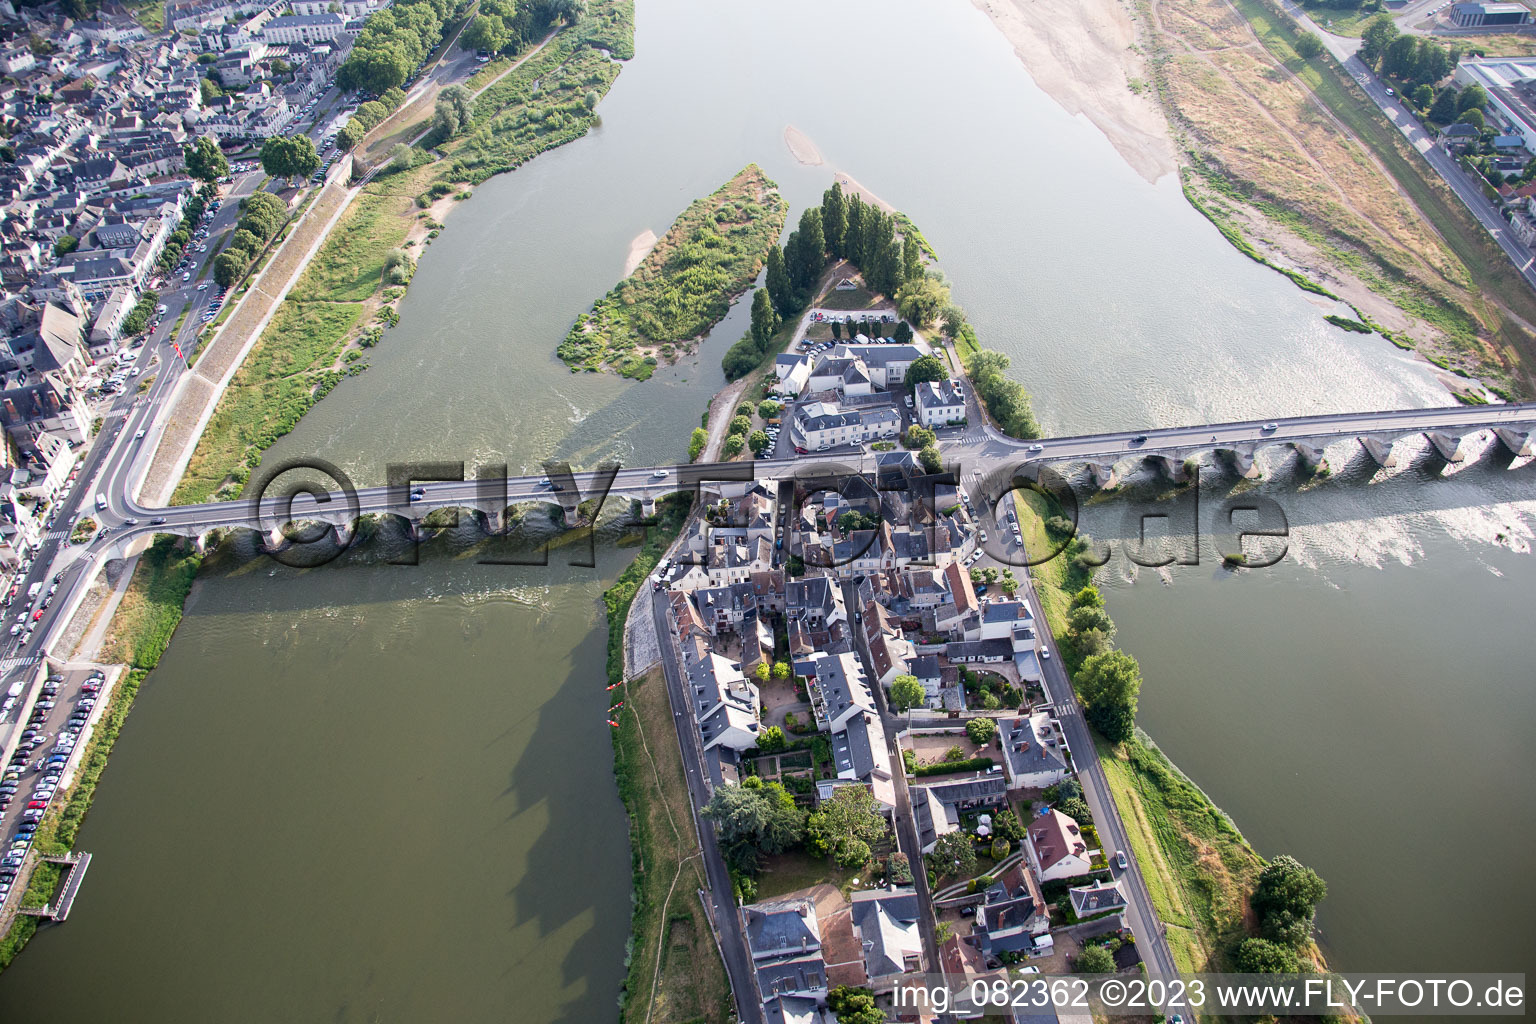 Amboise dans le département Indre et Loire, France d'un drone